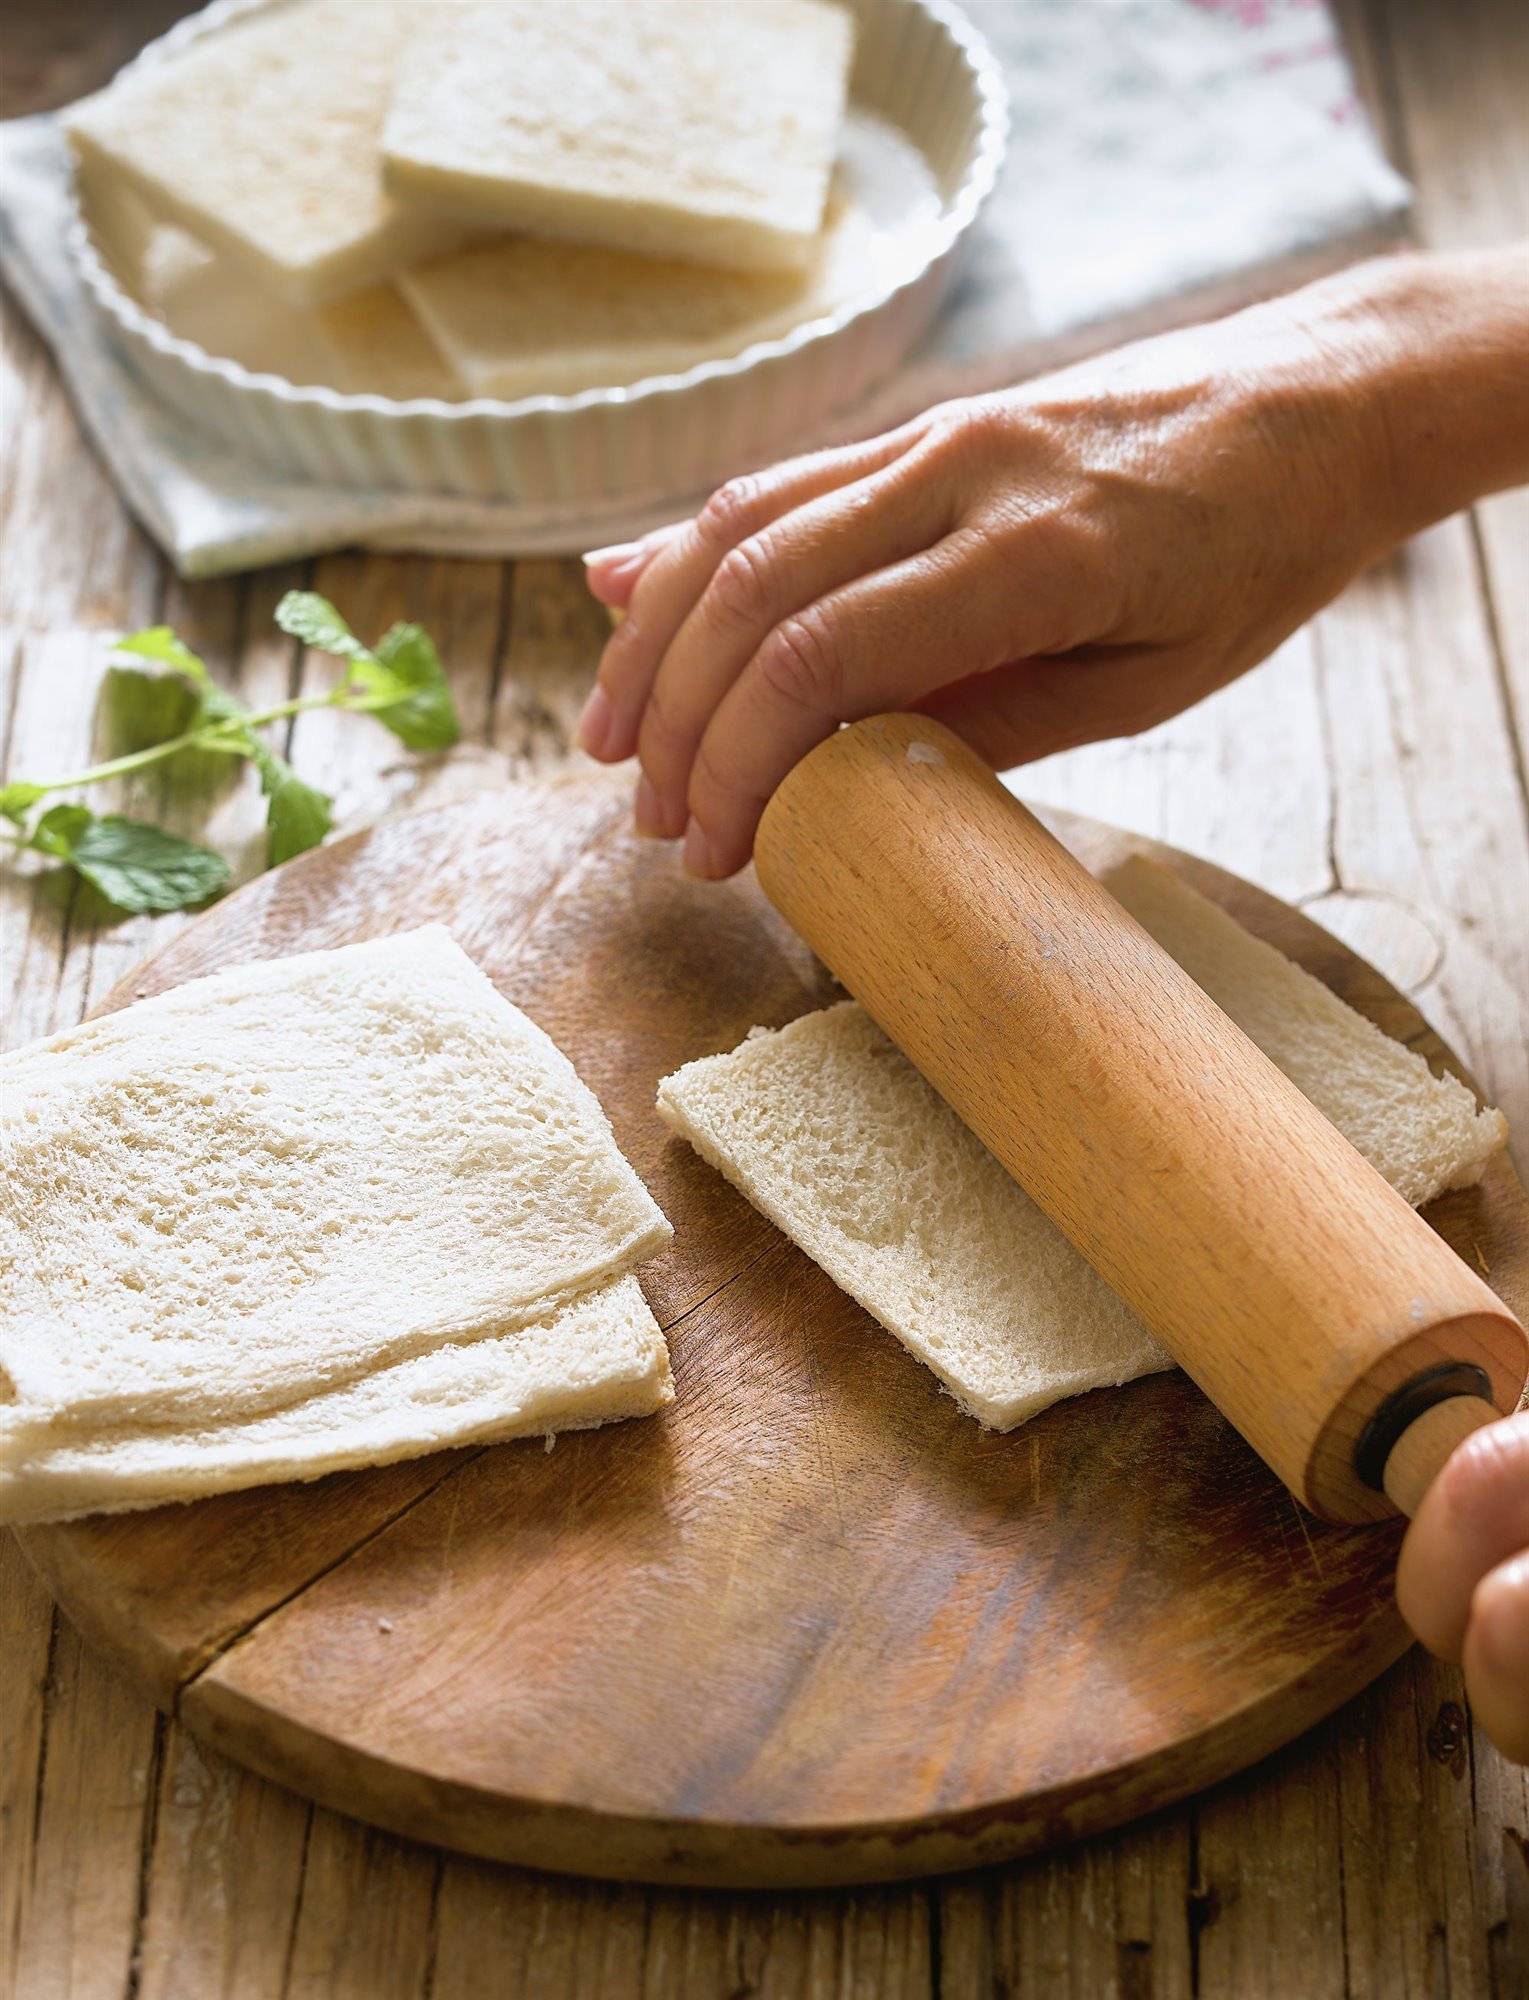 2. Aplana el pan con un rodillo